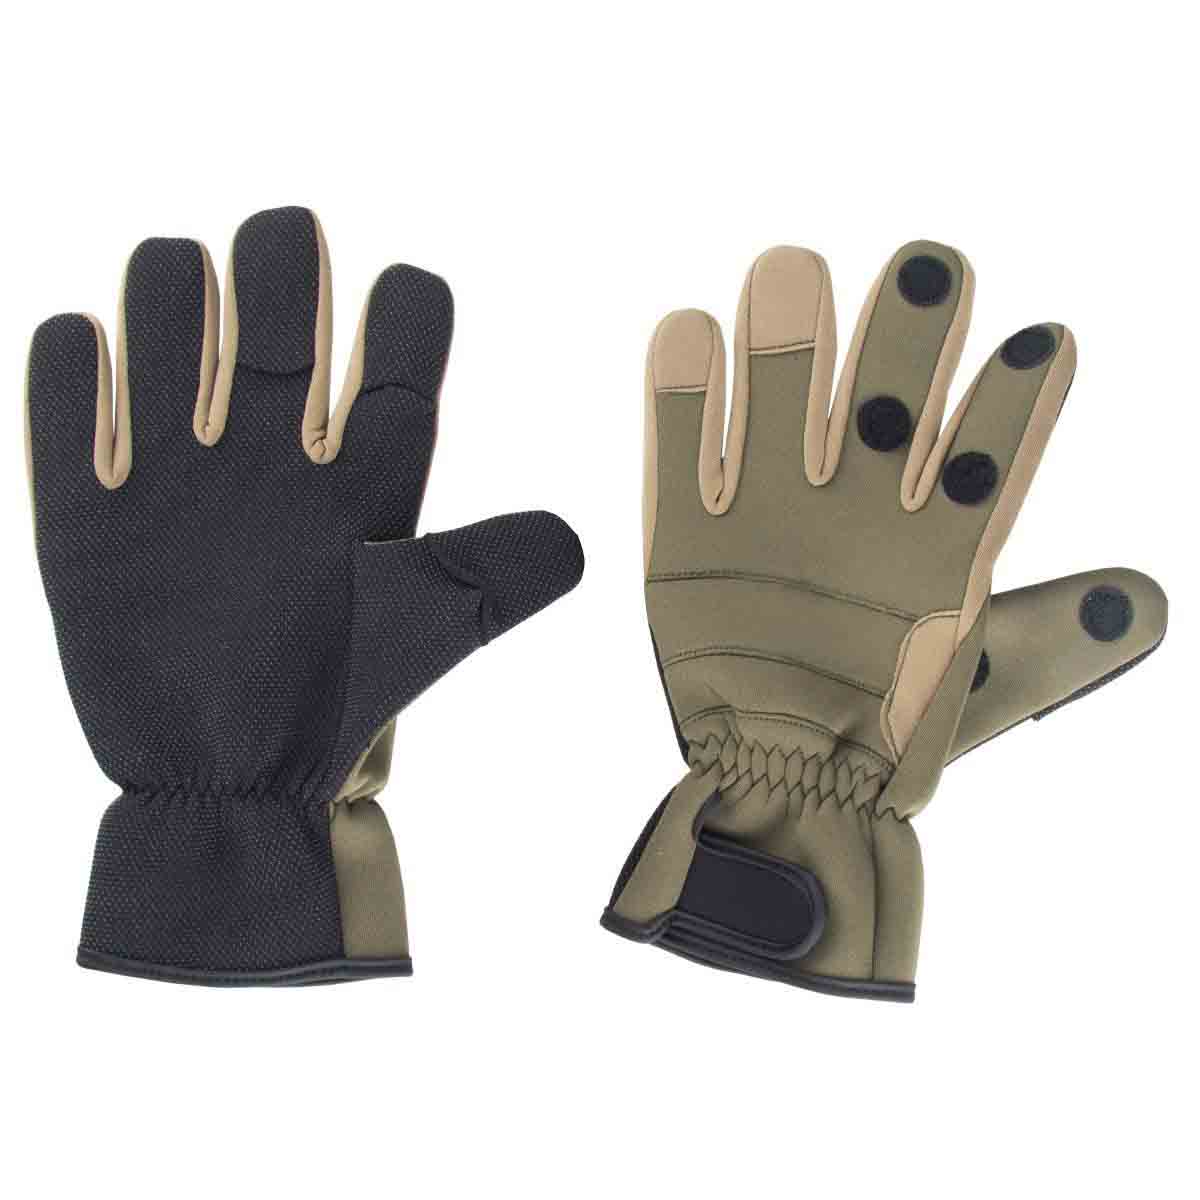 Neoprene Ice Fishing Gloves for Fly Fishing Hiking Running buy